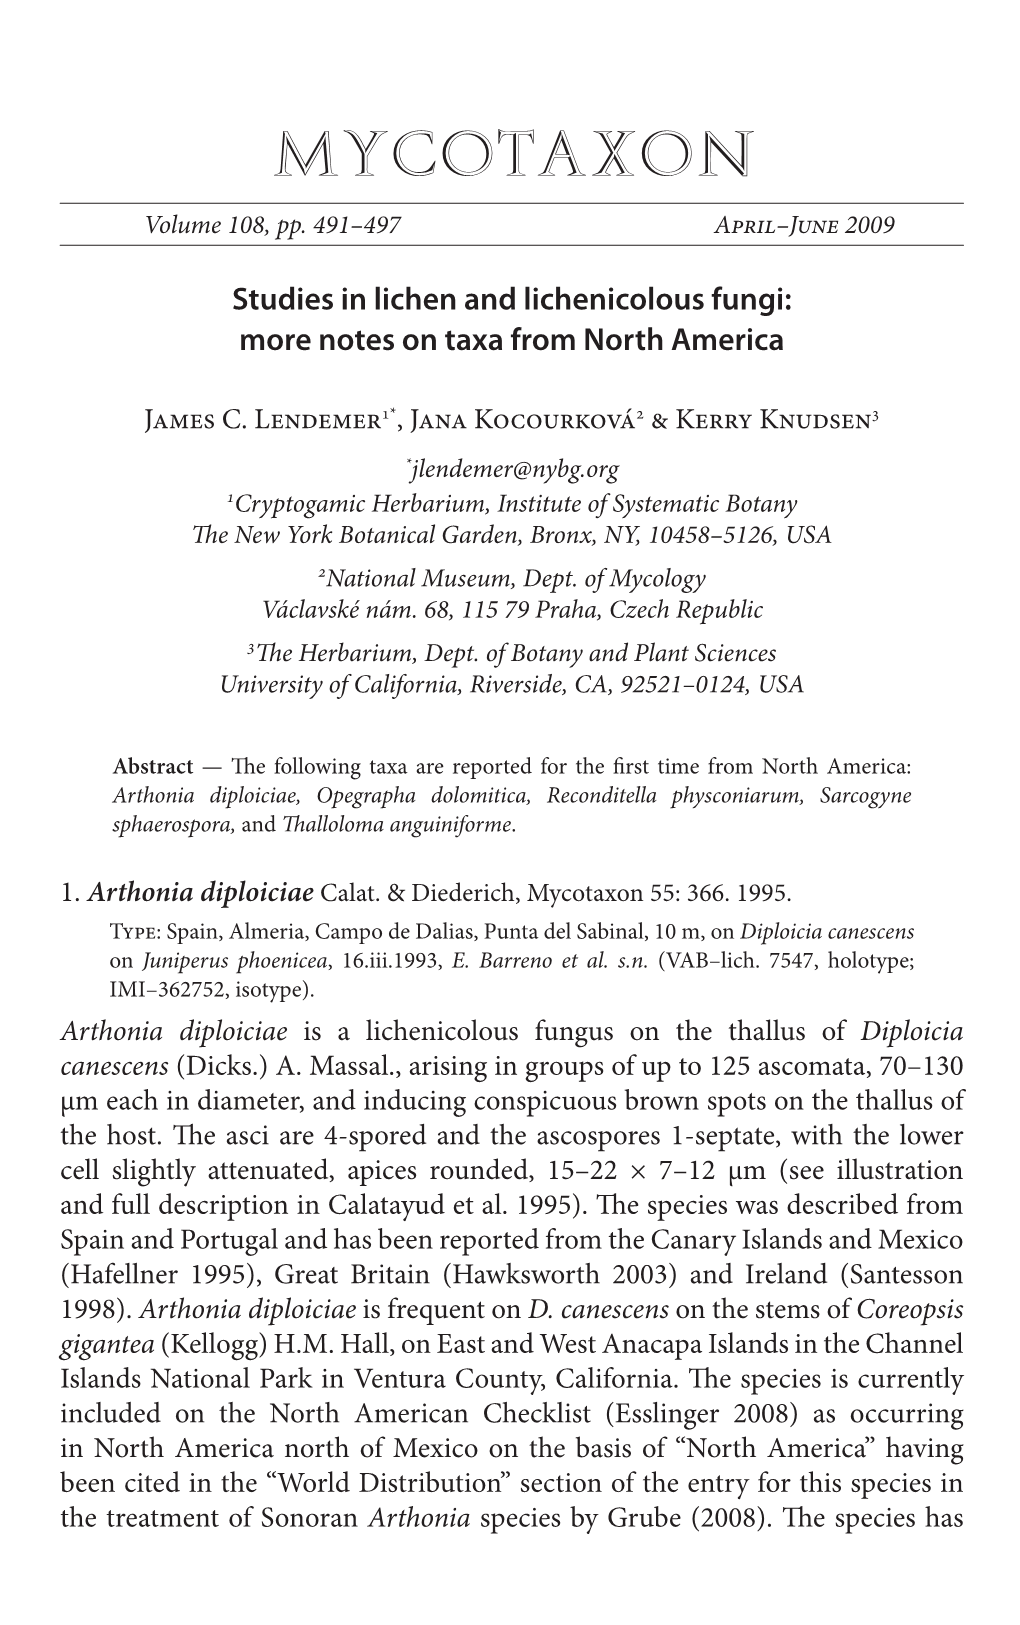 Studies in Lichen and Lichenicolous Fungi: More Notes on Taxa from North America